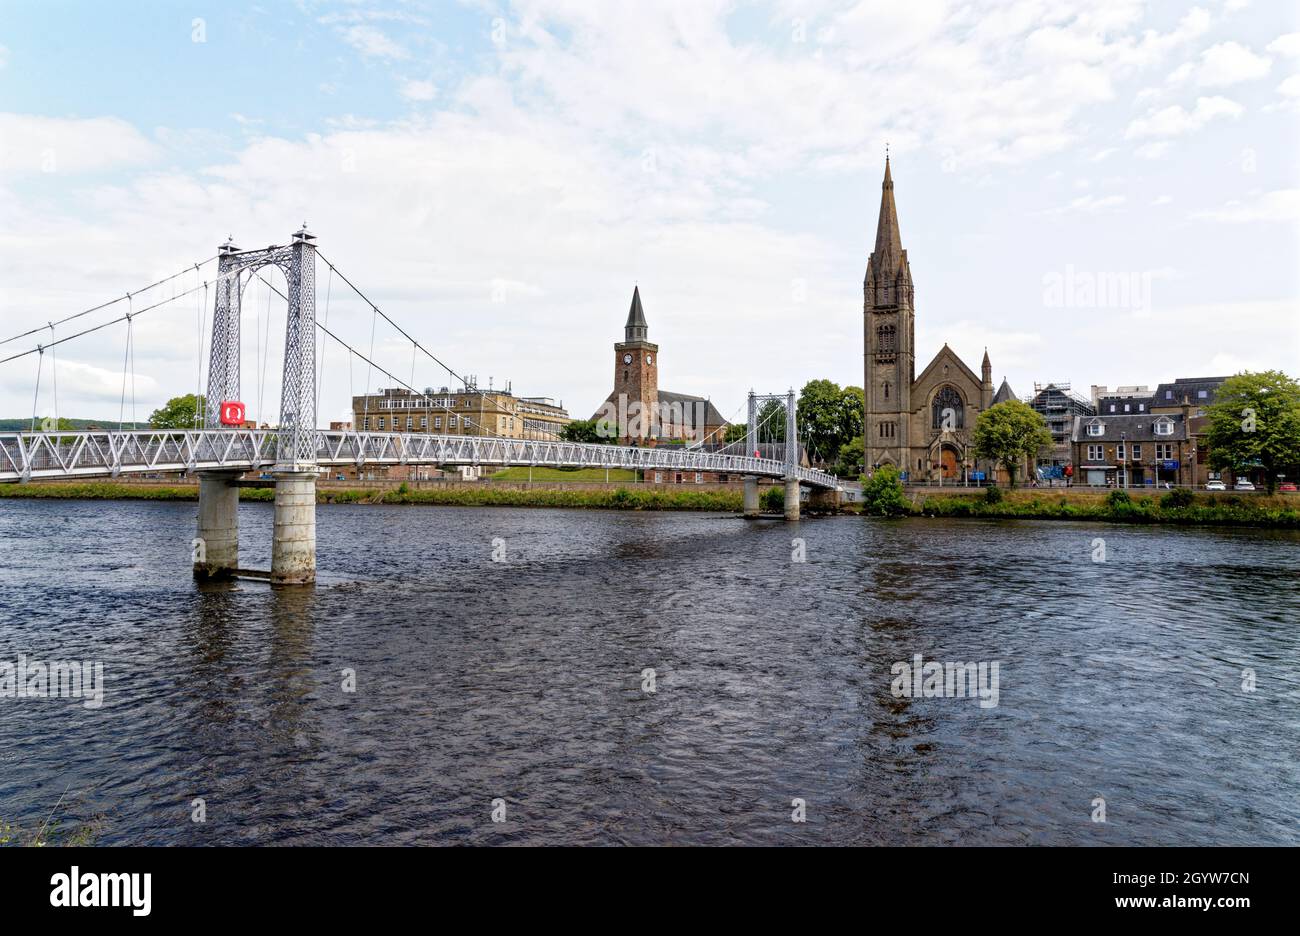 Le pont suspendu de Greig Street traverse la rivière Ness à Inverness avec l'église Free North.Inverness, Écosse - Royaume-Uni - 18 juillet 2021 Banque D'Images